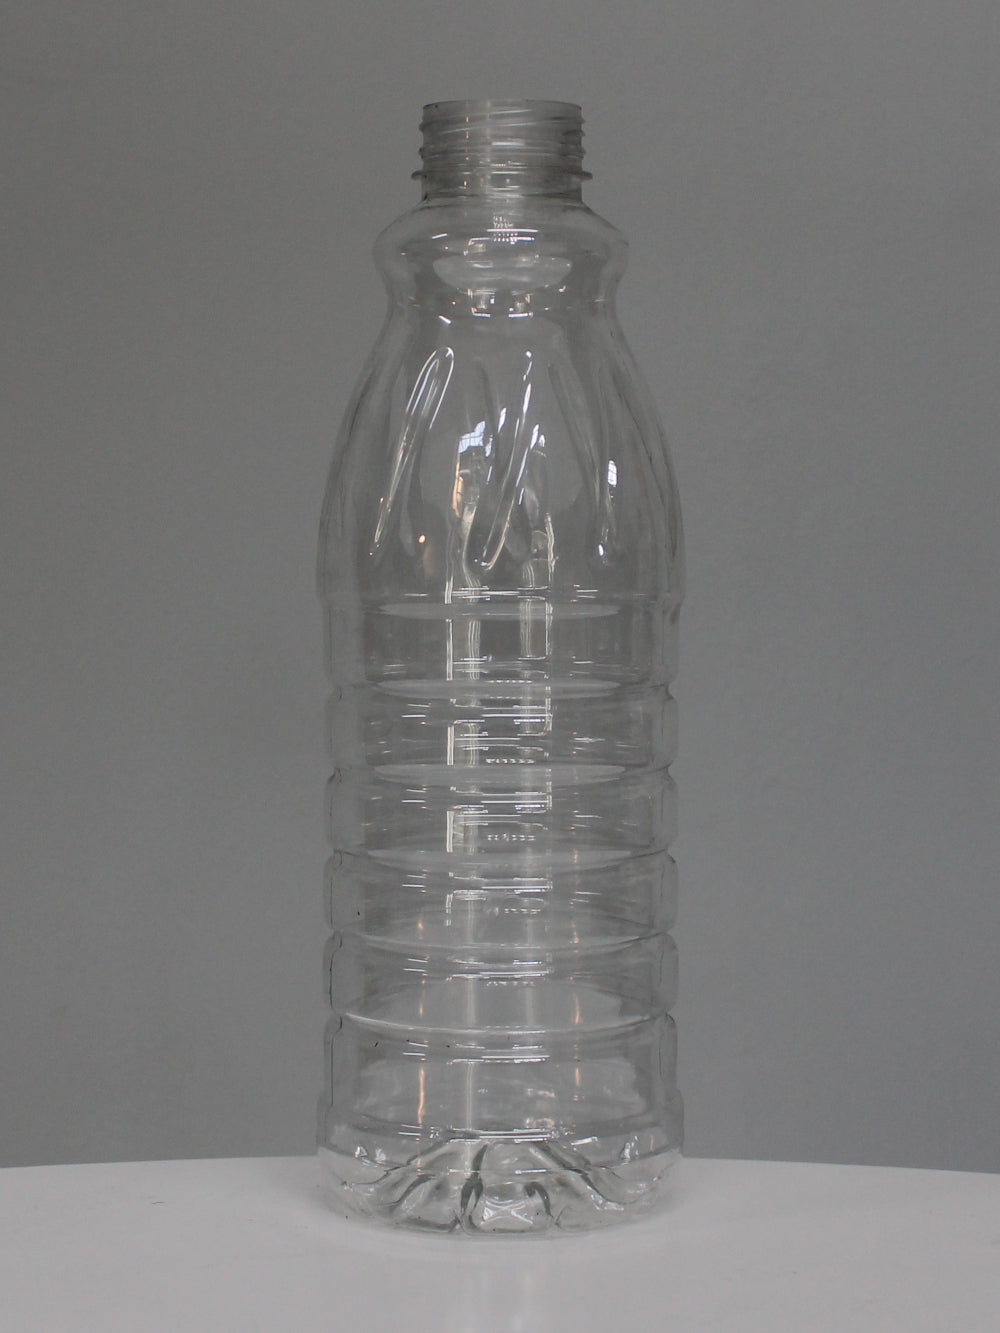 1Lt Classic Juice PET Bottle - (Pack of 50 units)